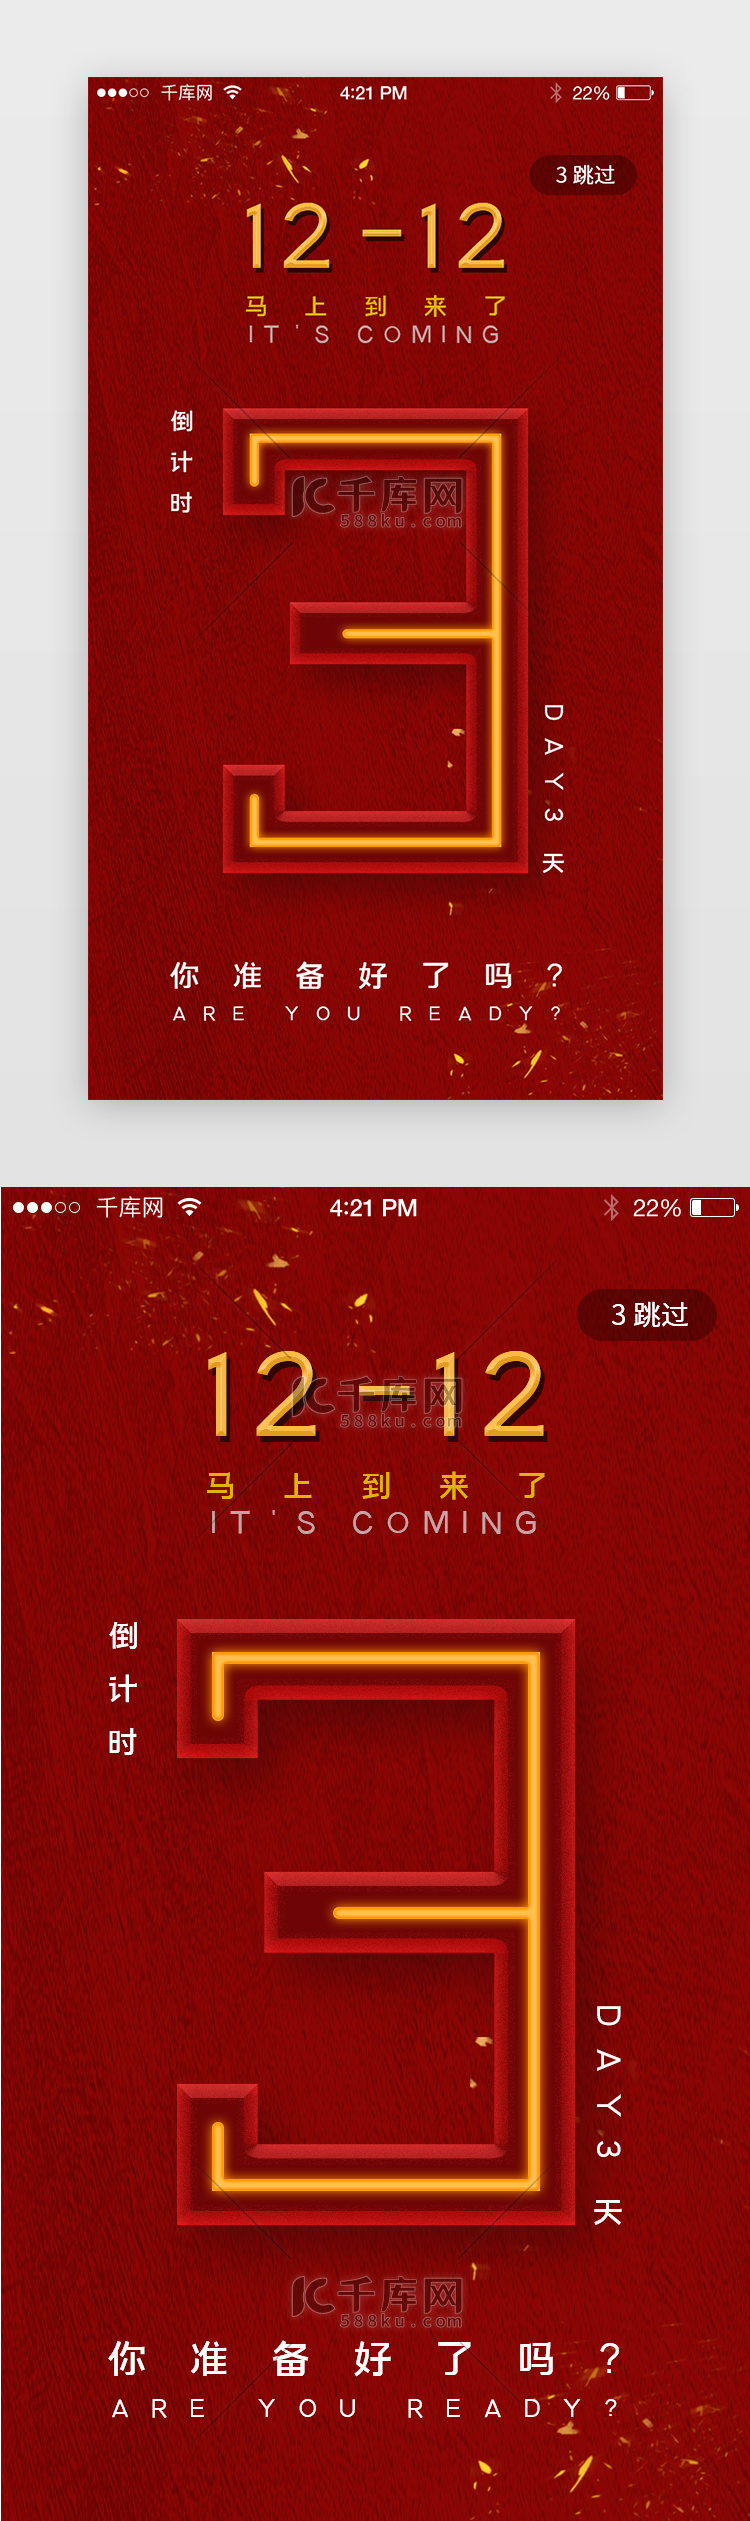 深红色系双12立体数字app启动页启动页引导页闪屏电商